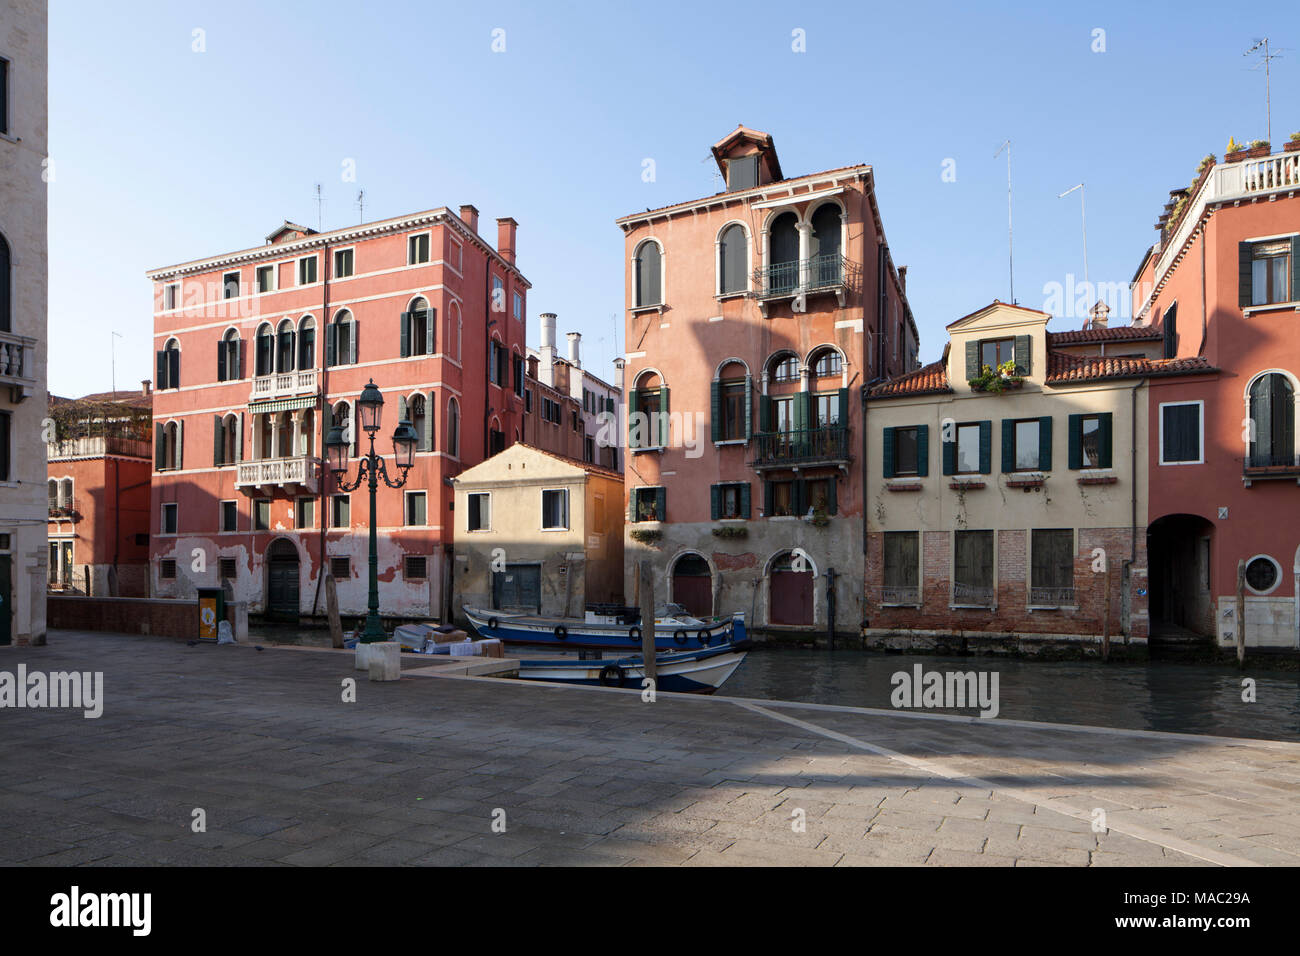 Maisons du canal à Venise Italie Banque D'Images